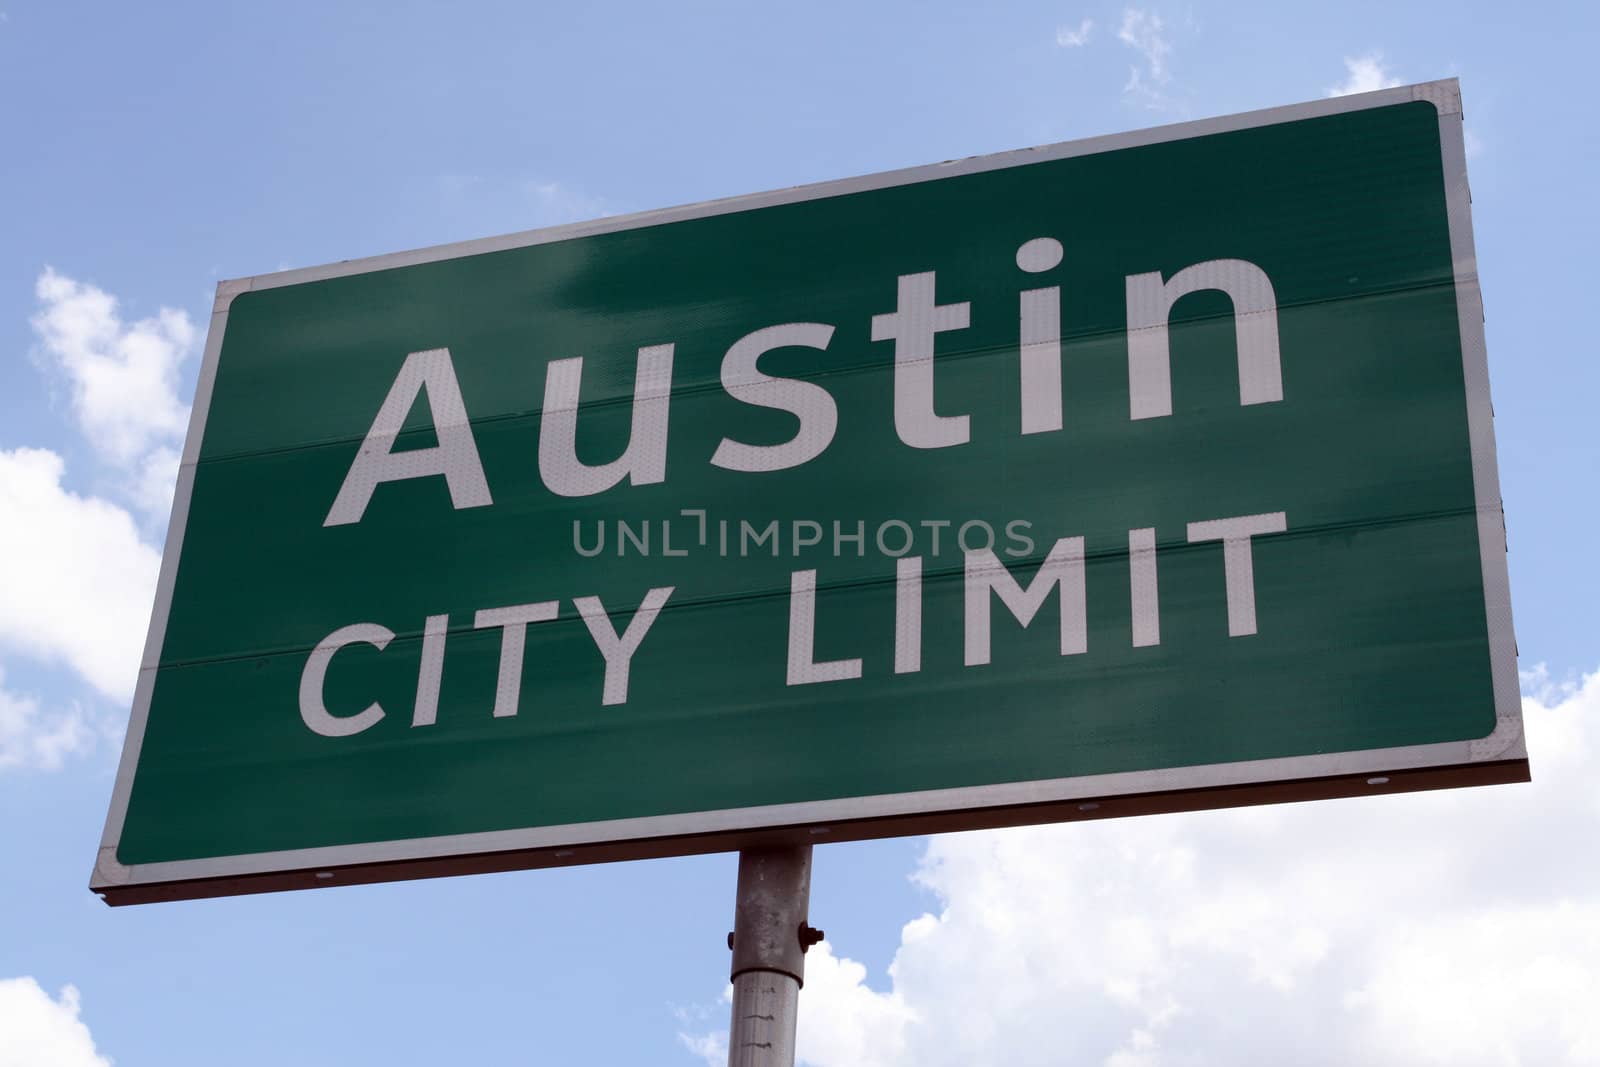 An Austin City Limit road sign close up.